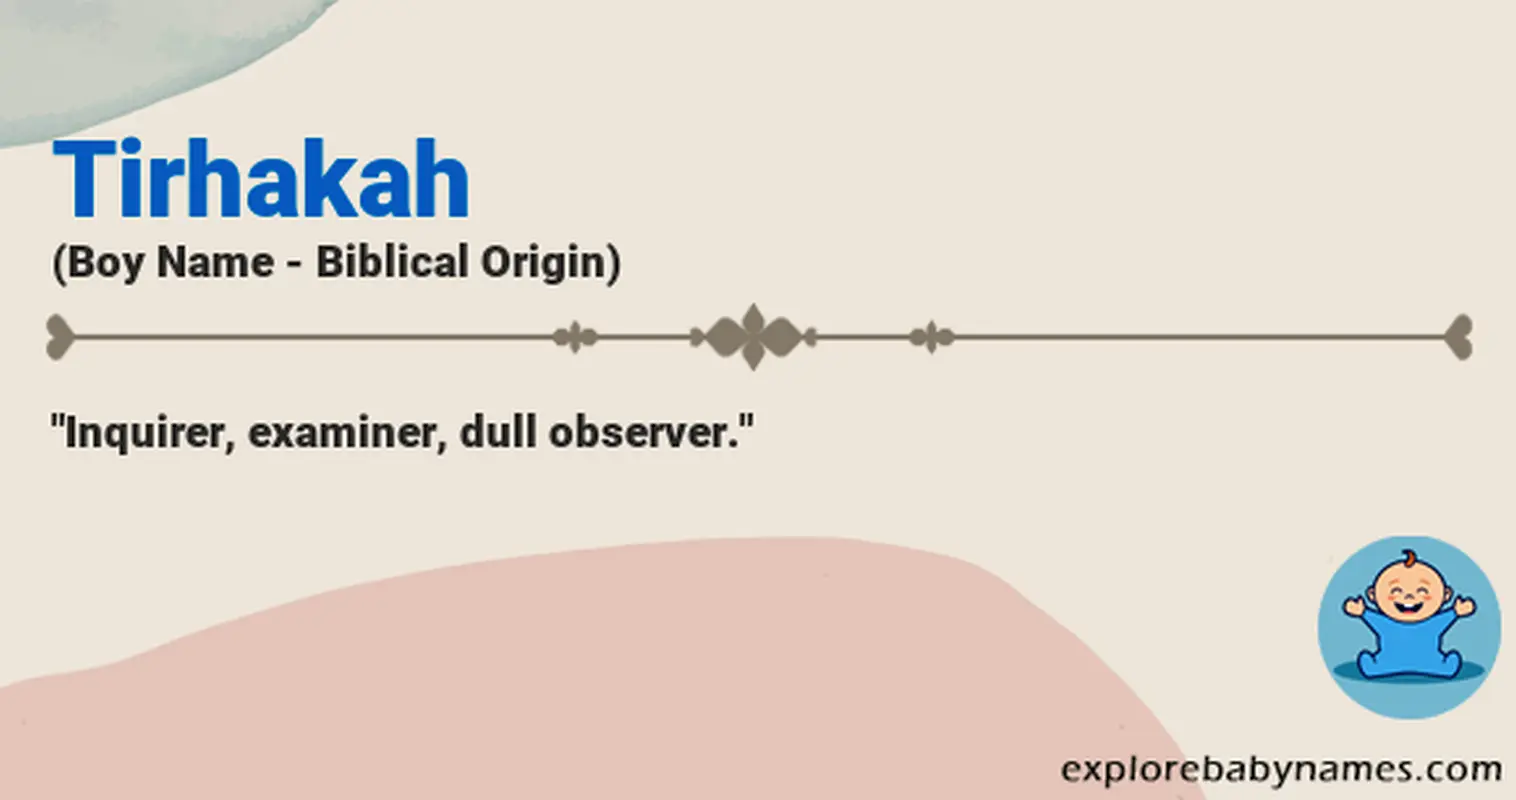 Meaning of Tirhakah